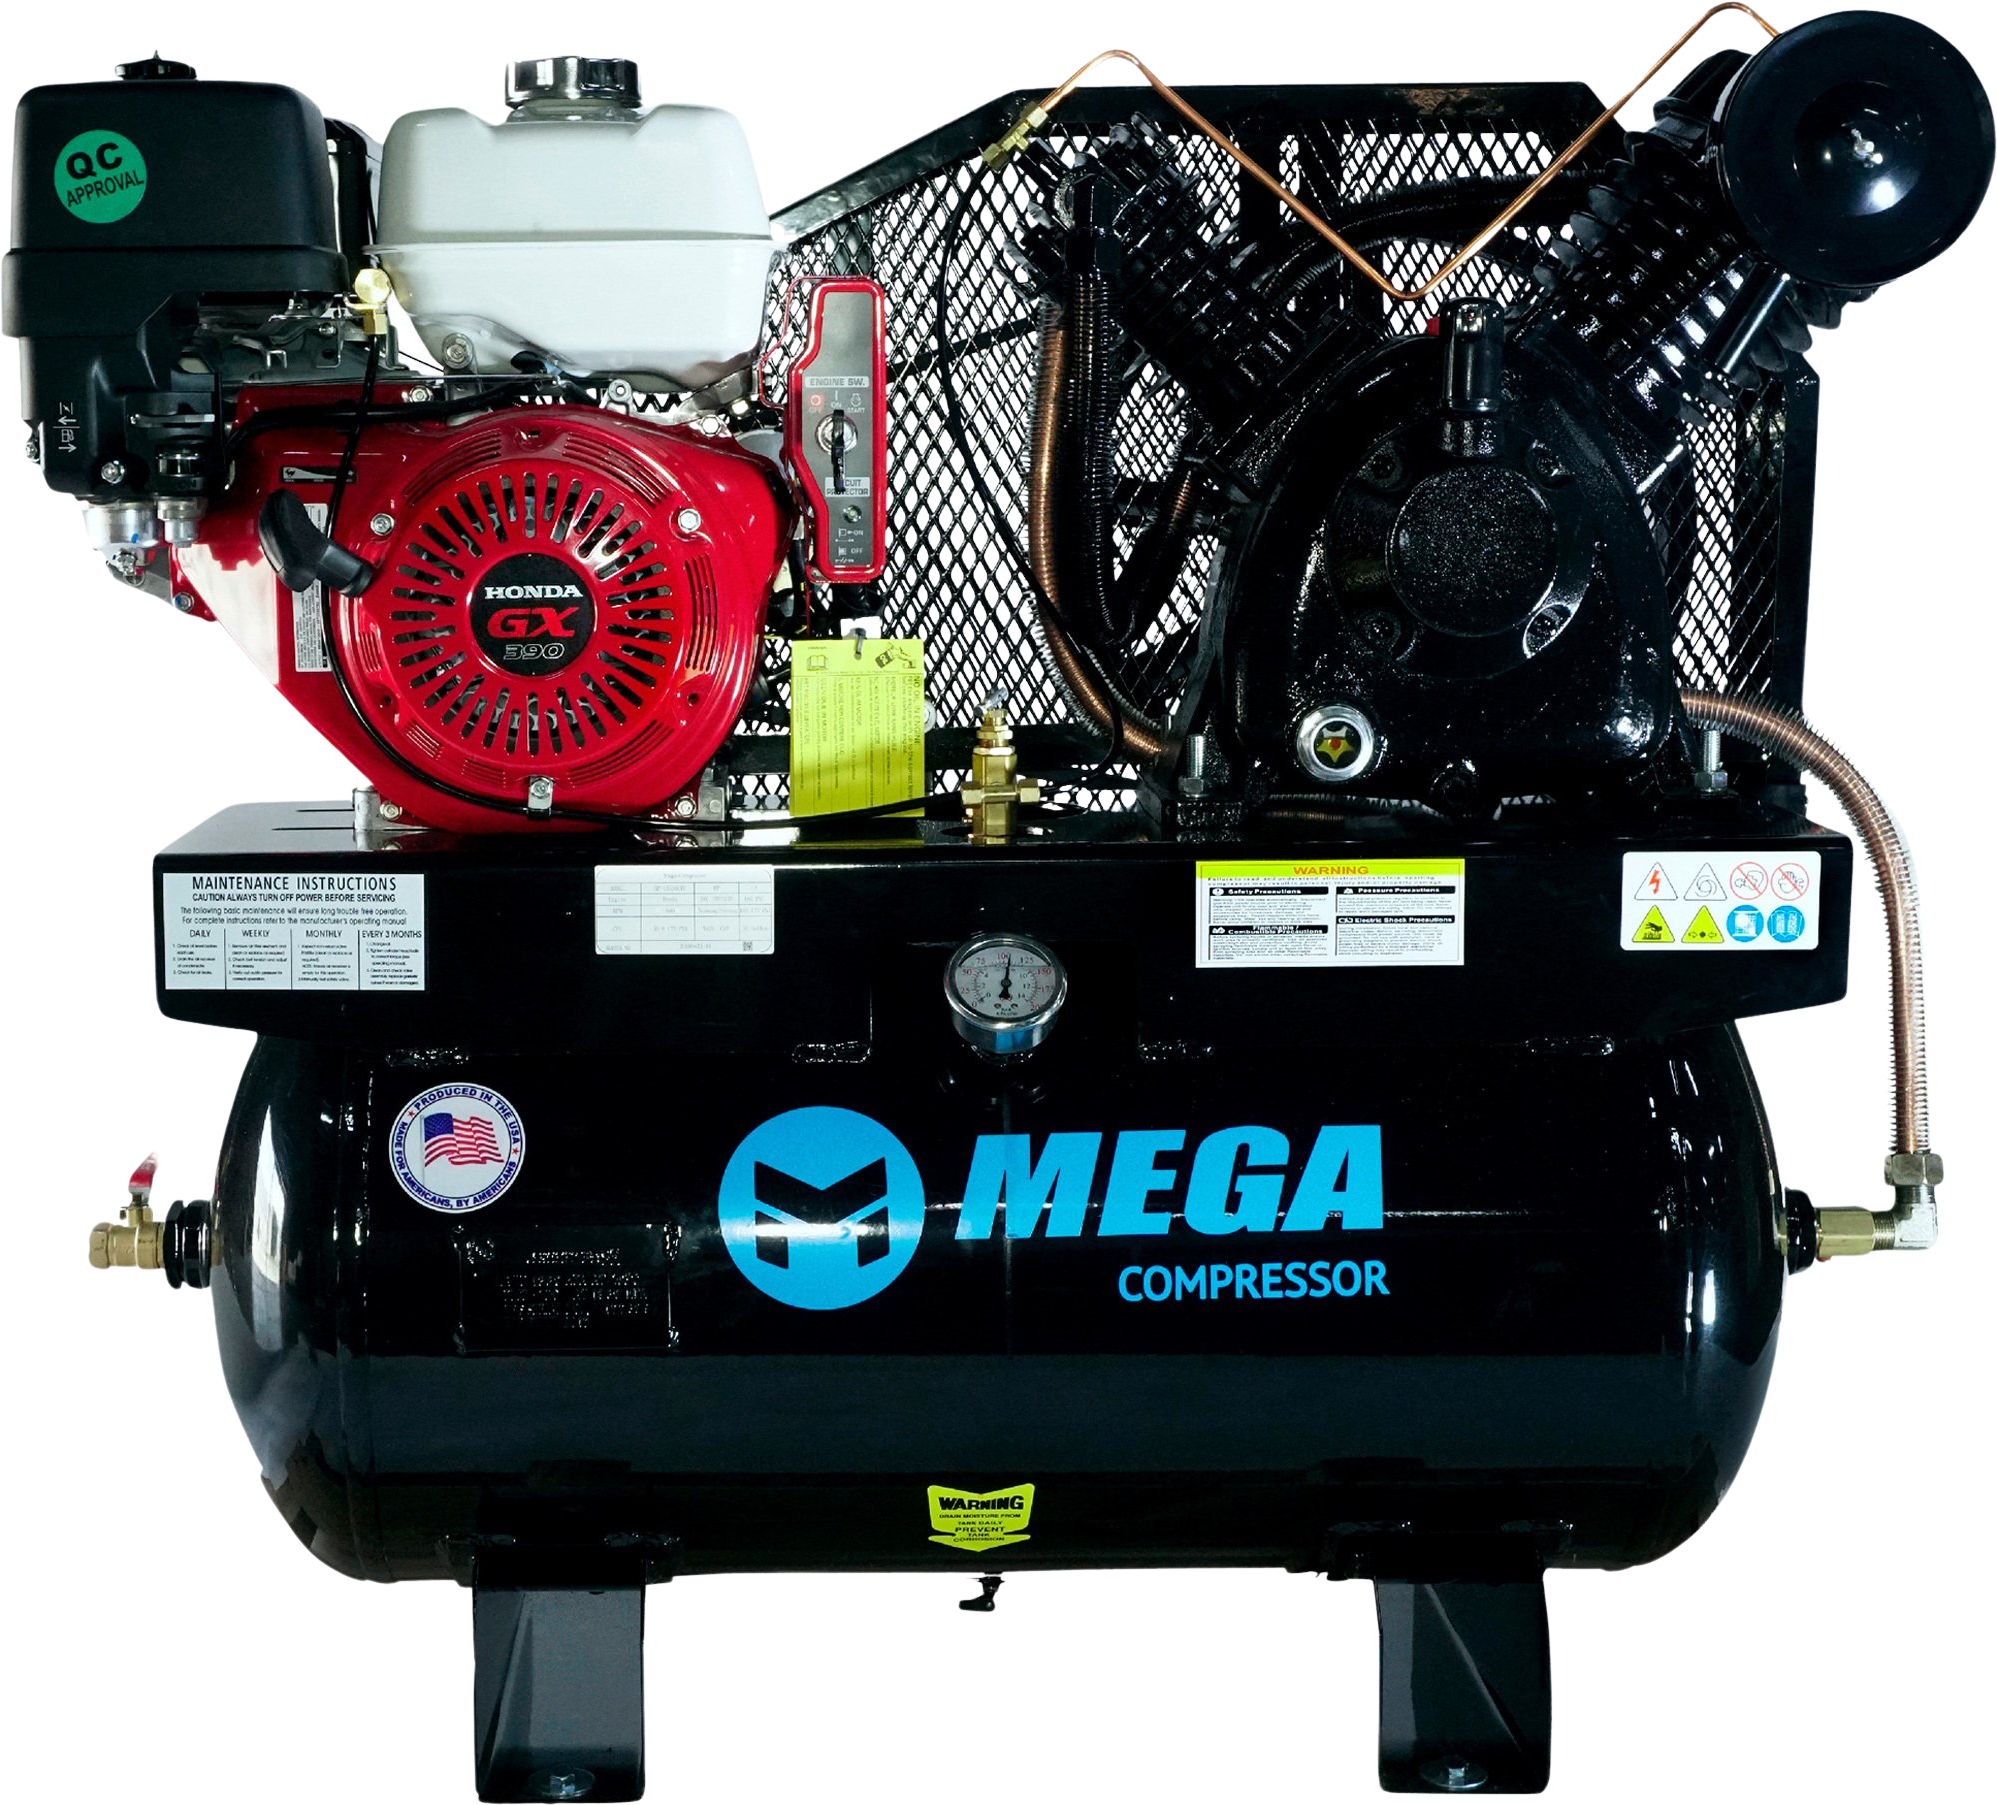 Mega Compressor MP-13030GTU Air Compressor Truck Mount 30 Gallon 13 HP 175 PSI Honda Engine Gas New